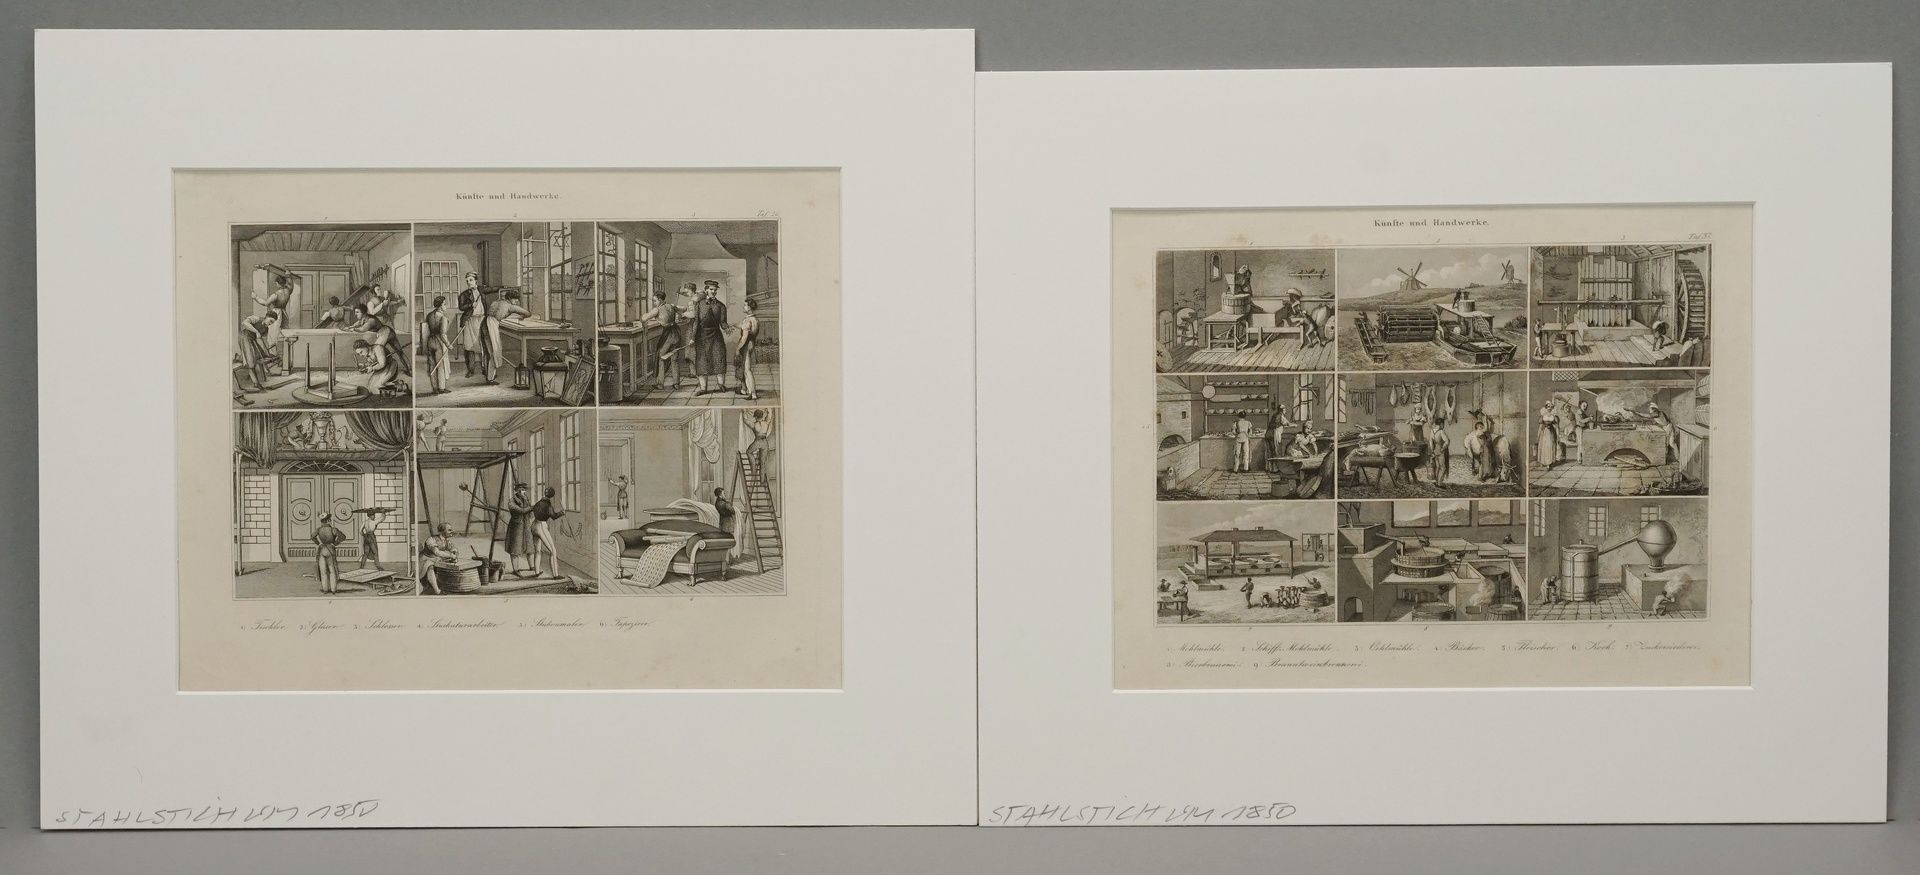 Zwei Stahlstiche, "Künste und Handwerke"Stahlstich/Papier, um 1850, mehrere Teilansichten auf